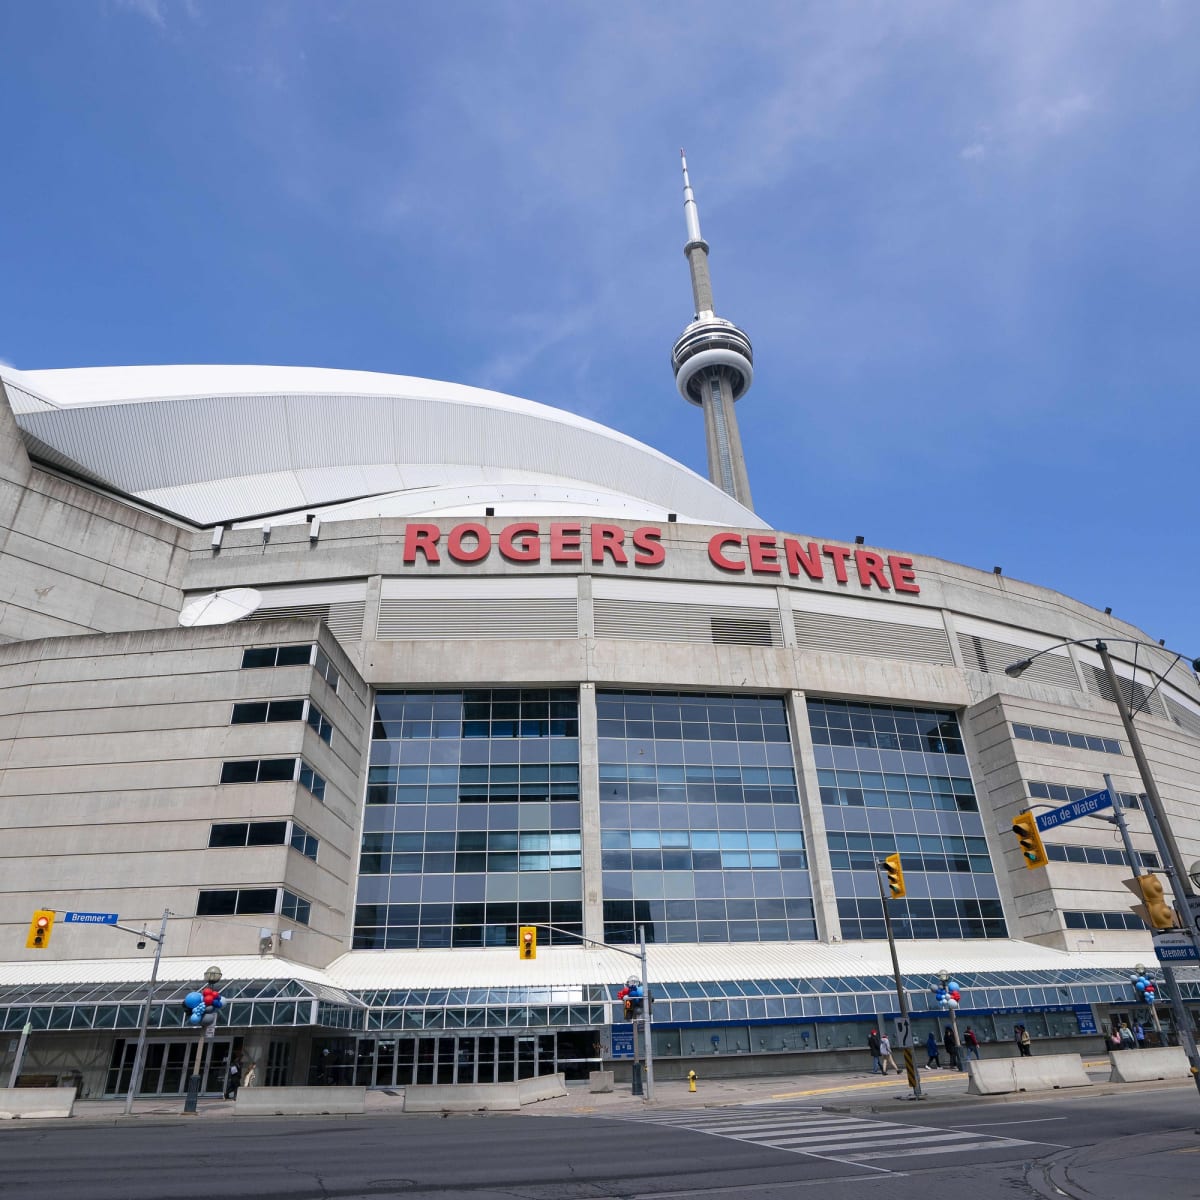 Rogers Centre renovation plans